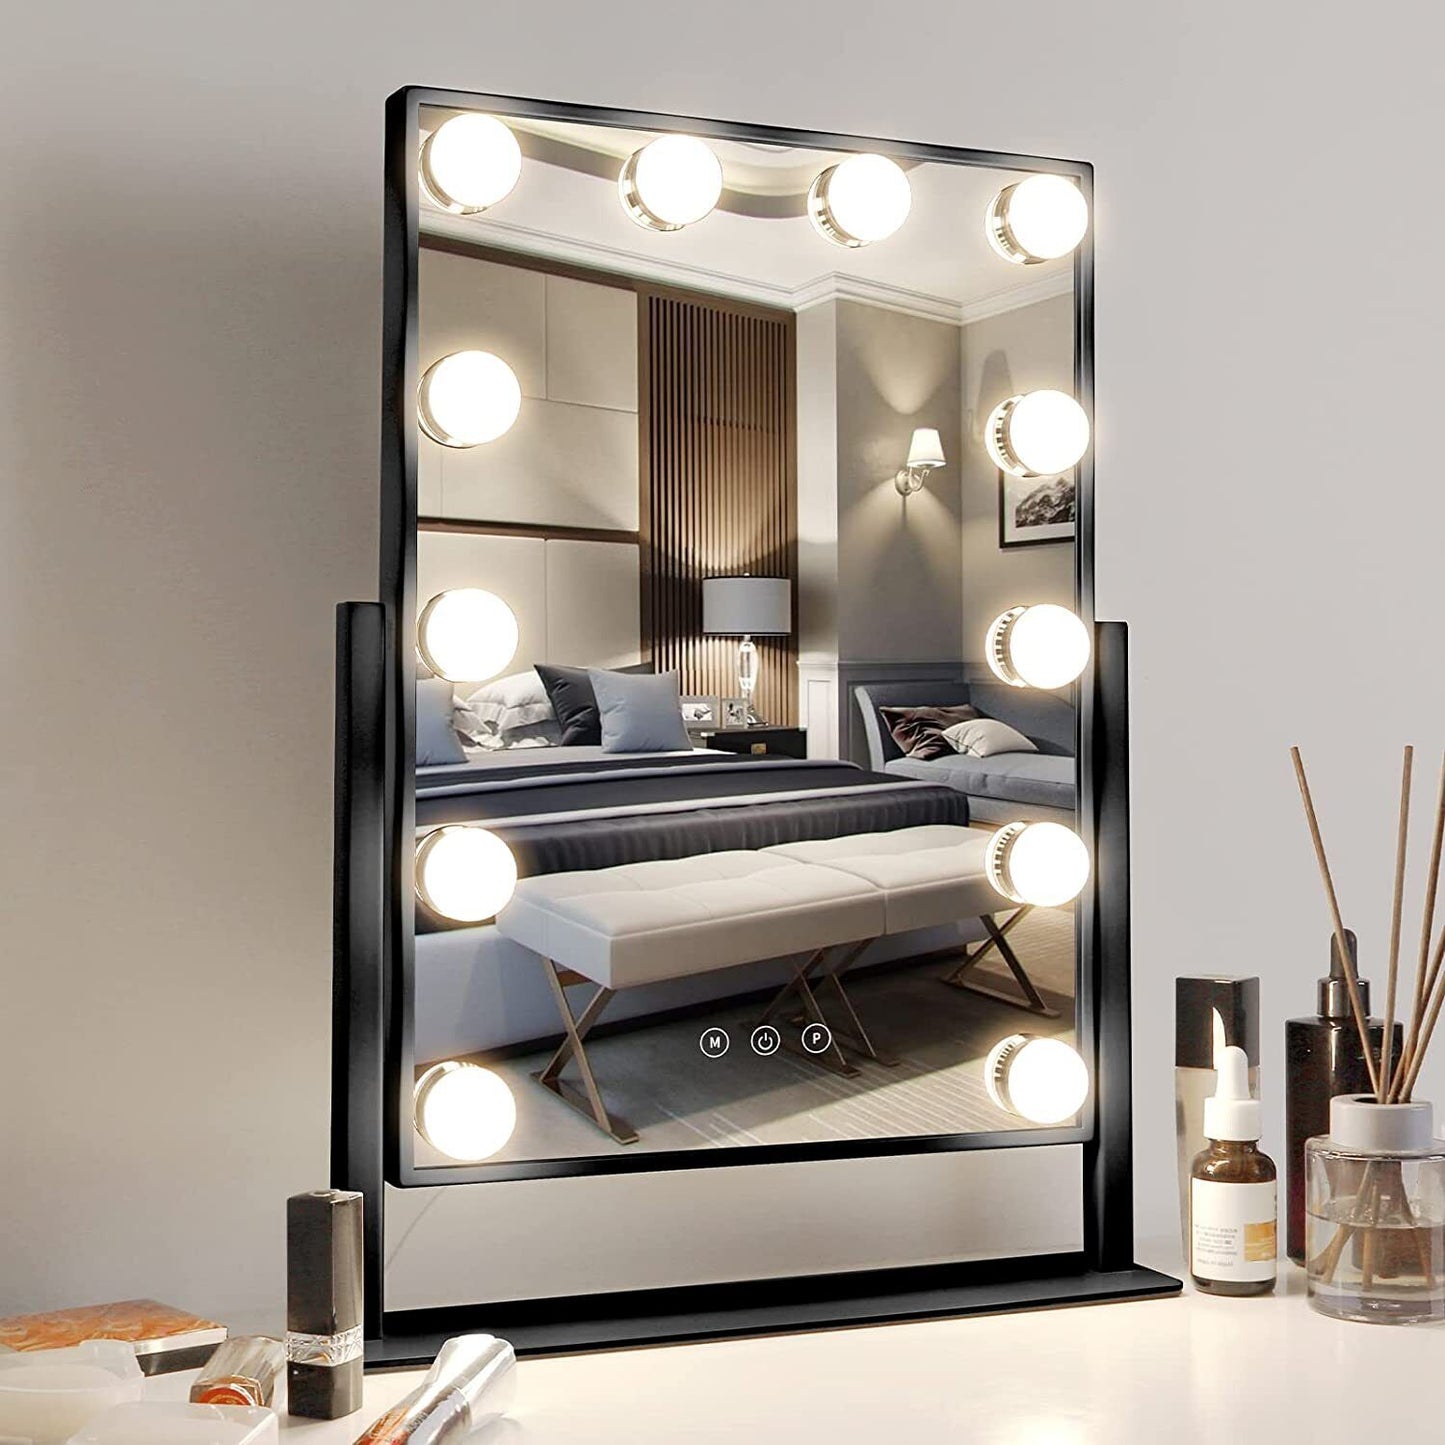 finelifepro 35,5 x 47cm Kosmetikspiegel Schminkspiegel mit 12 LED Beleuchtung Hollywood Spiegel Stehspiegel für Badzimmer Schminktisch